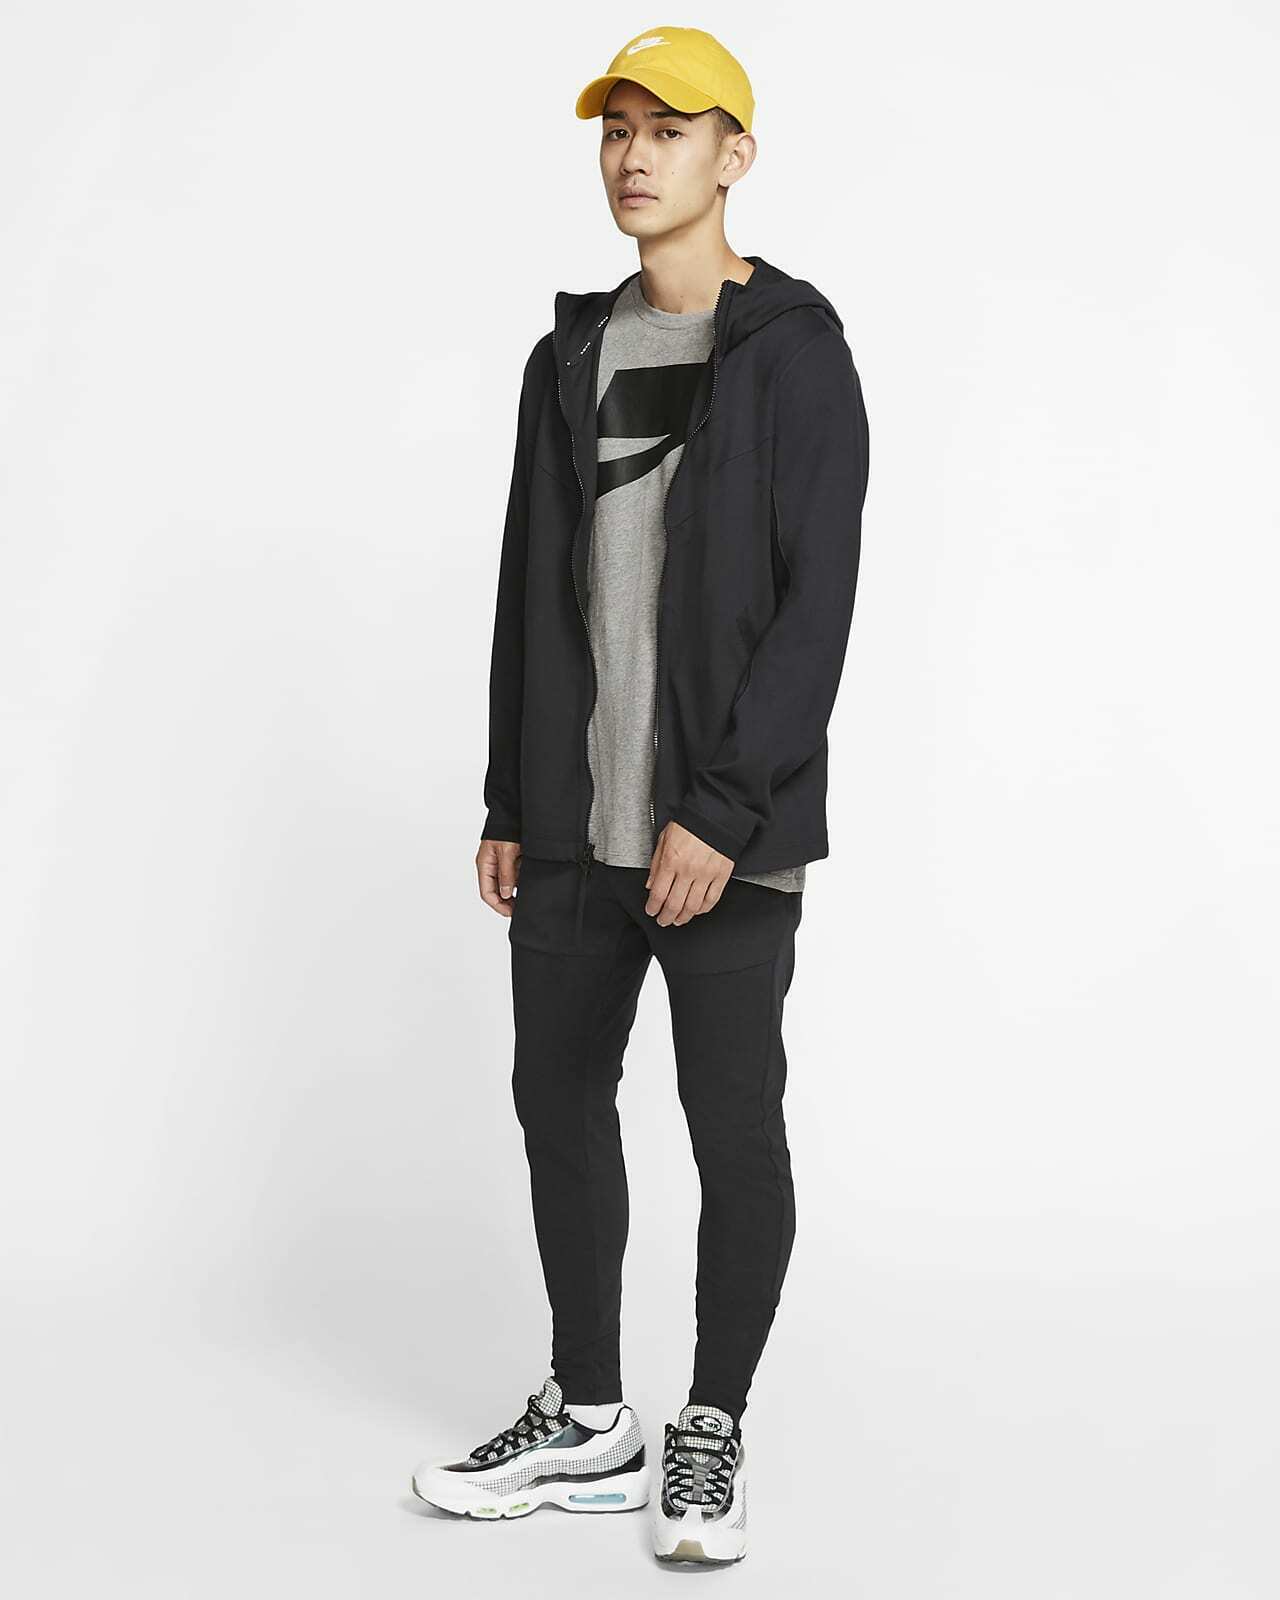 Nike Sportswear Tech Pack Men's Hooded Full-Zip Jacket (Black) Size XL - image 2 of 4